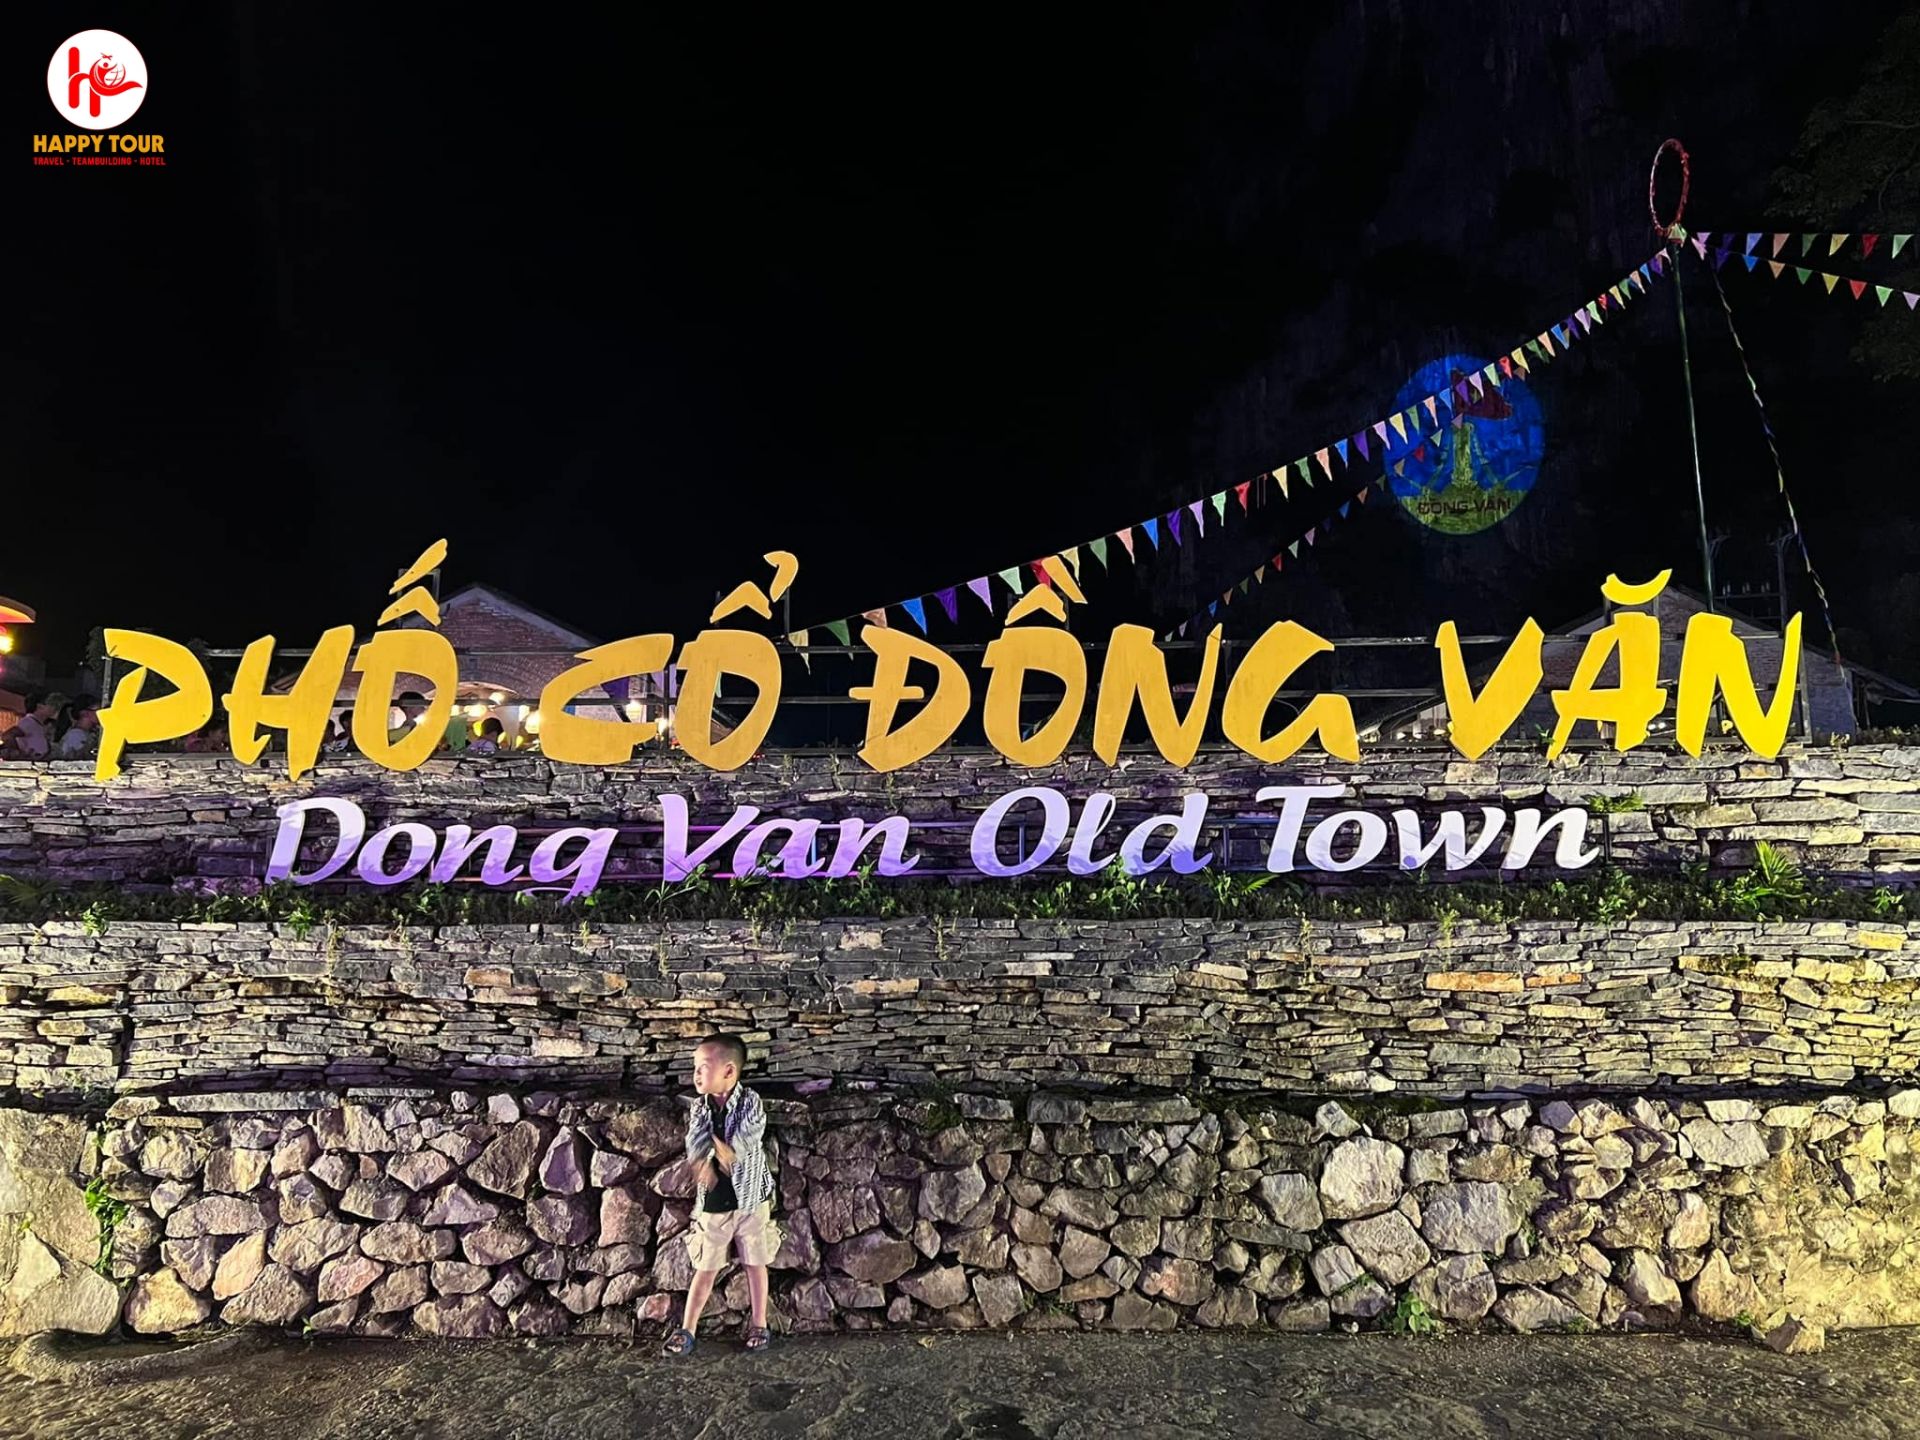 Dong van